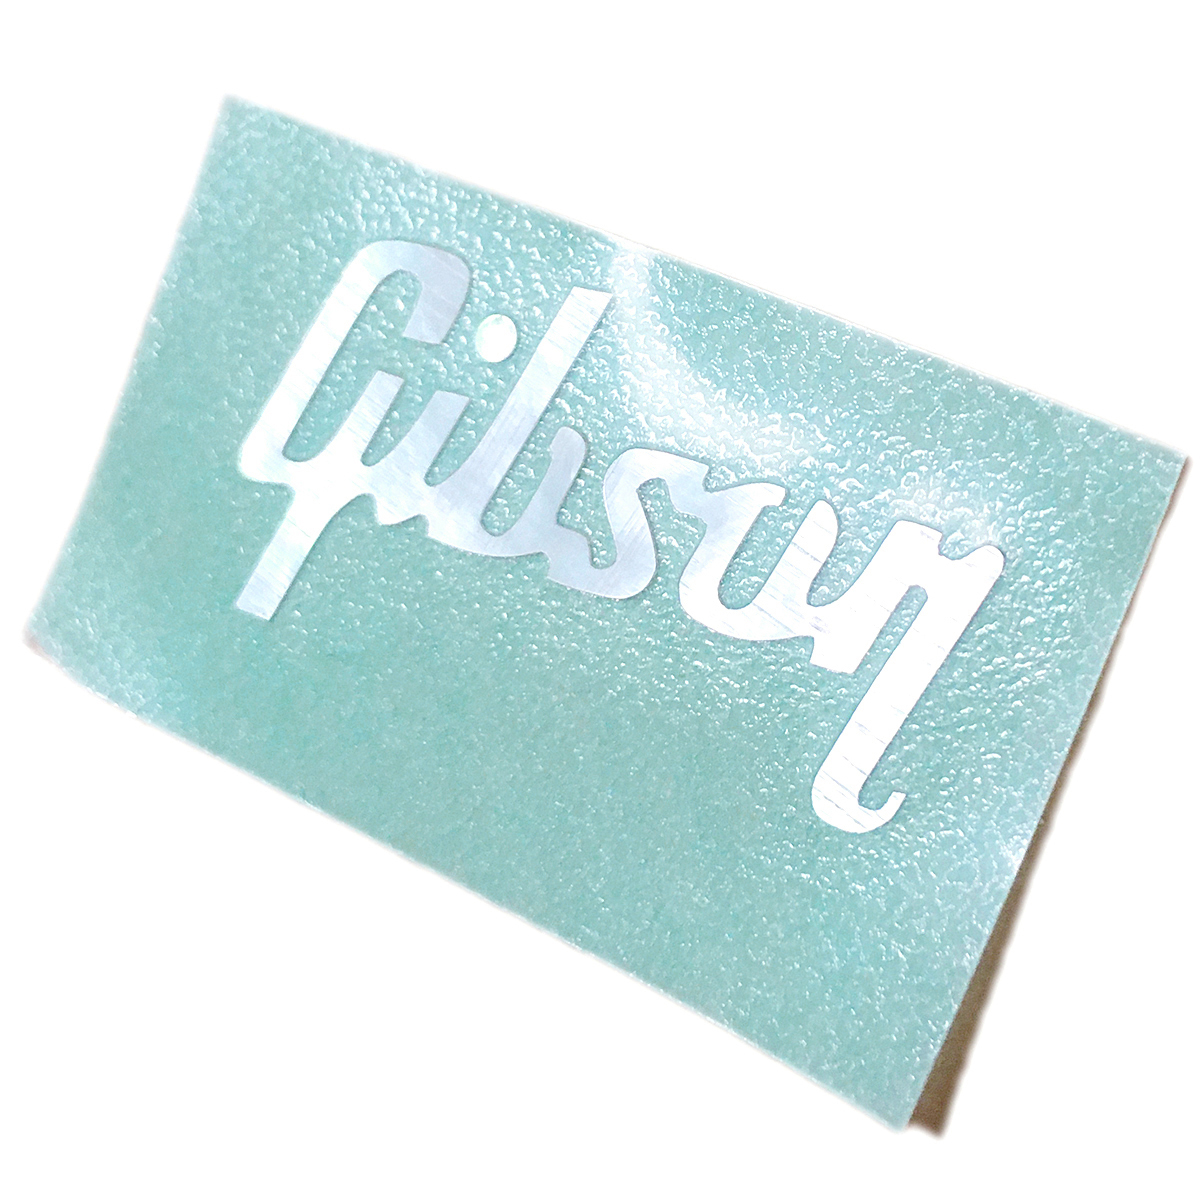 Gibsonhiskore стиль жемчуг ракушка Logo наклейка ( несколько покупка скидка . есть )